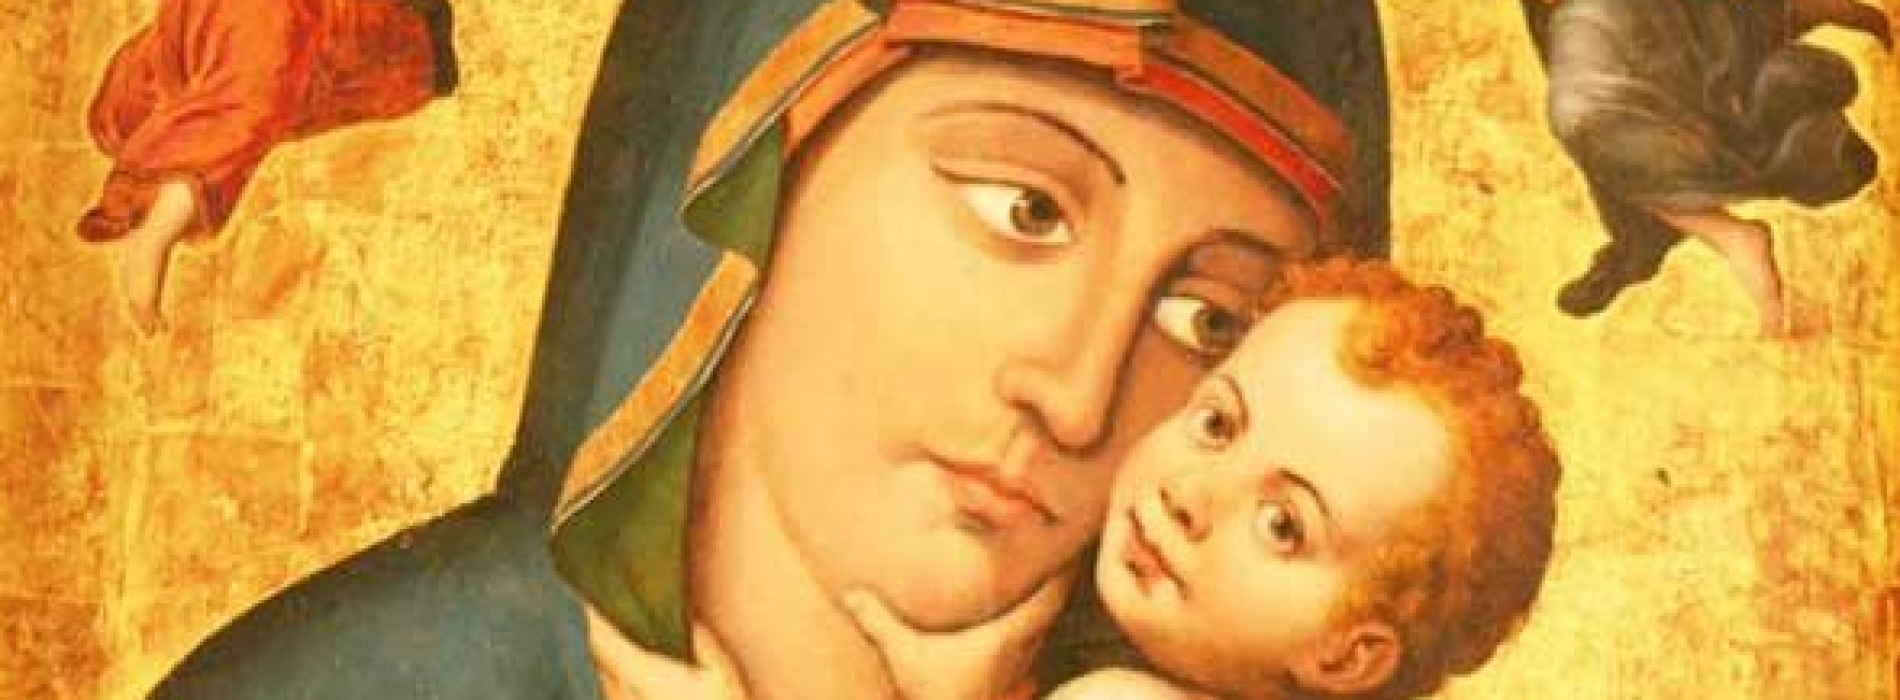 16 luglio, la Madonna del Carmine nella rumba degli scugnizzi